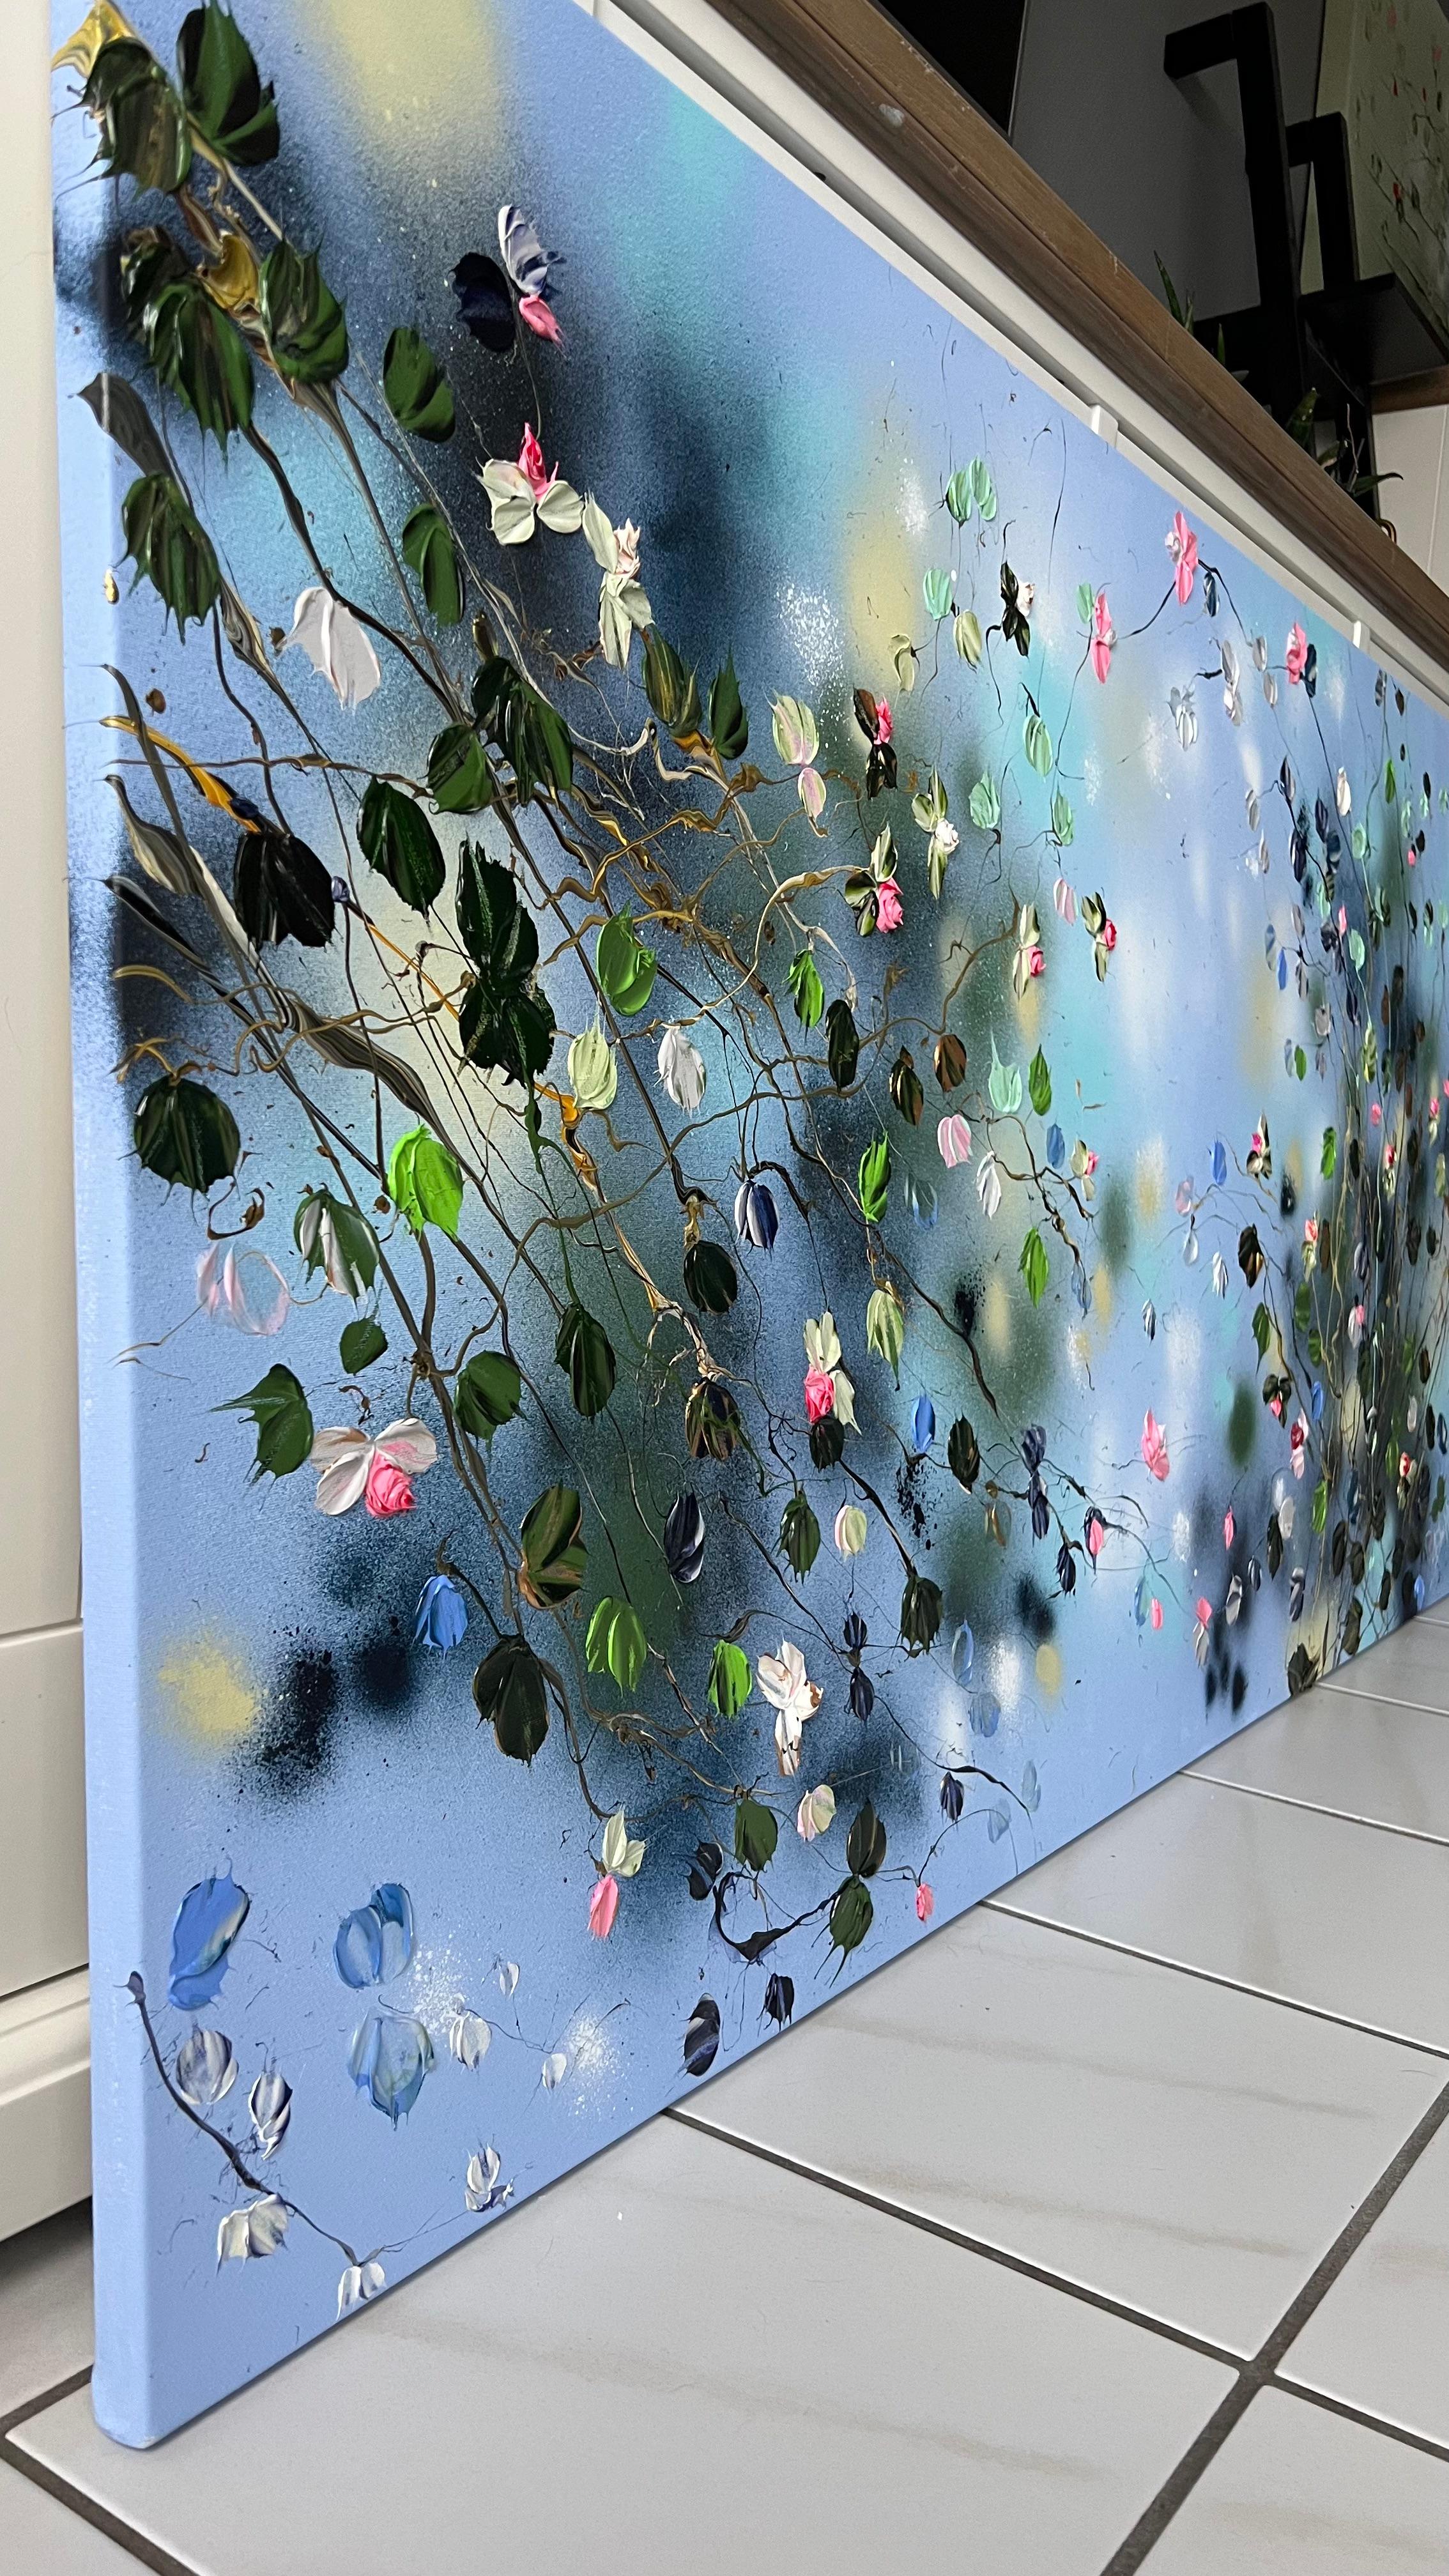 « Floral Minuet in Pastel Blue », art horizontal texturé floral de très grandes dimensions - Painting de Anastassia Skopp